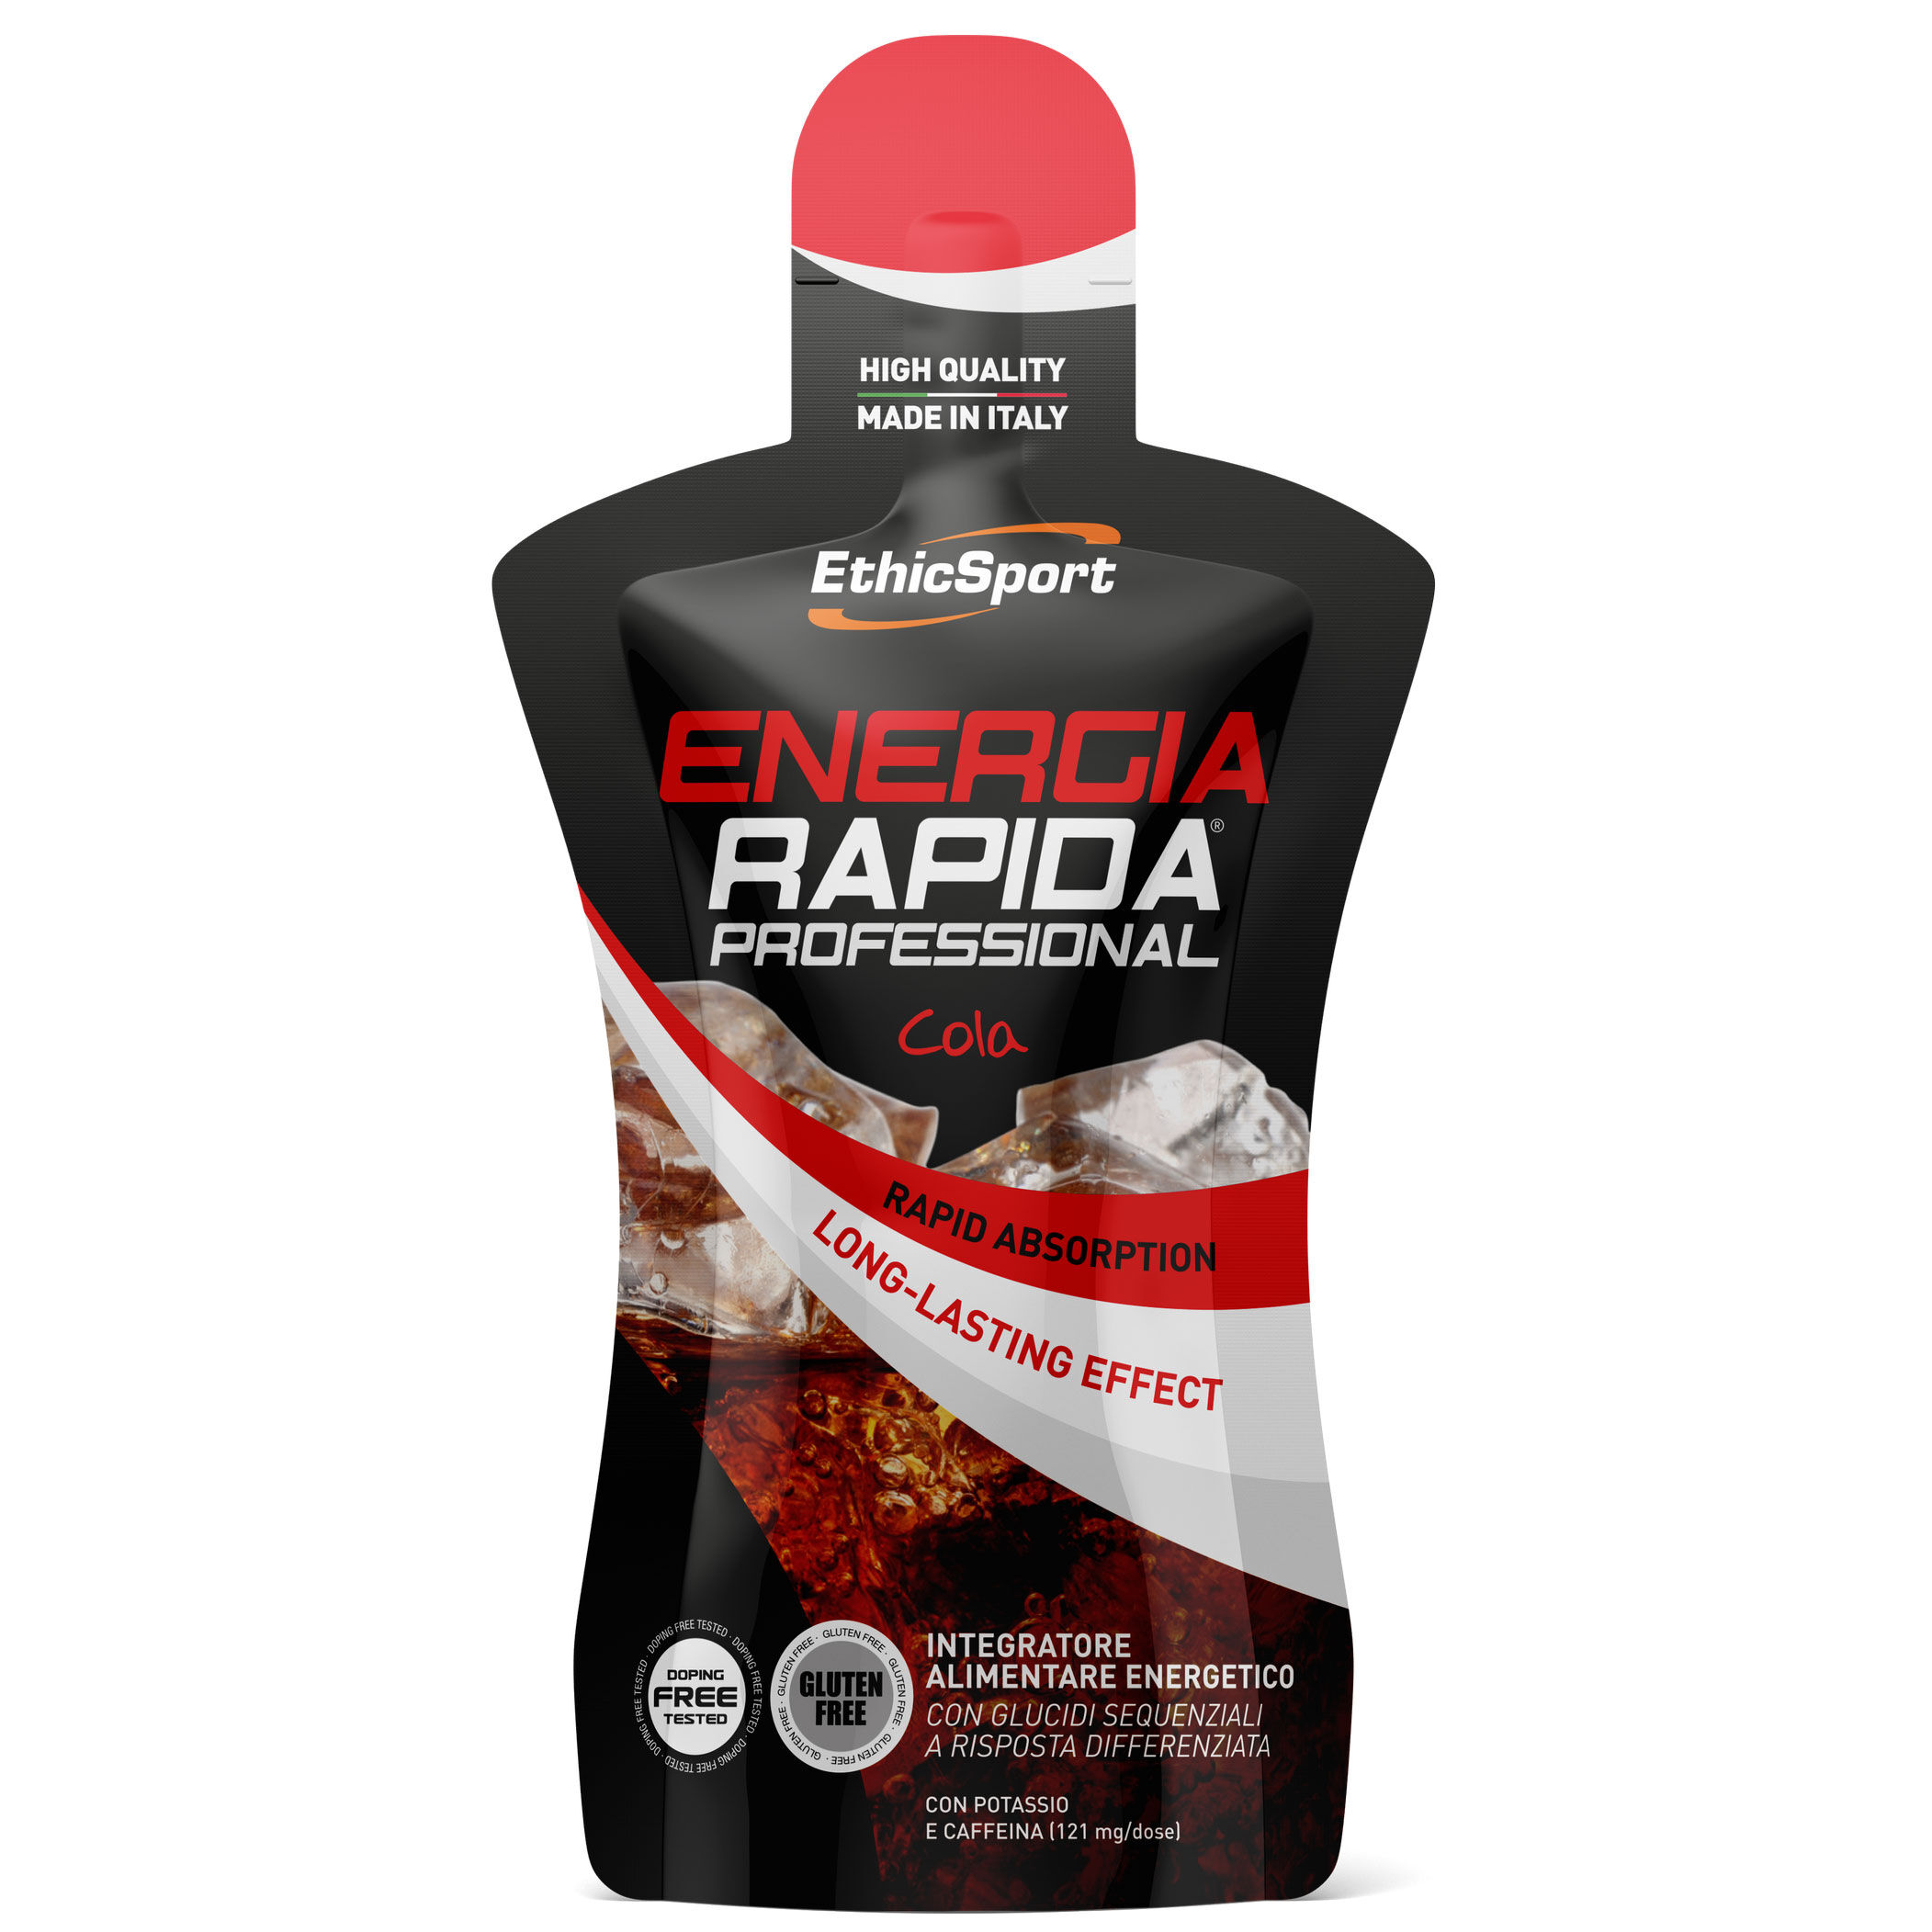 ENERGIA RAPIDA PROFESSIONAL Cola - Pack 50 ml.  